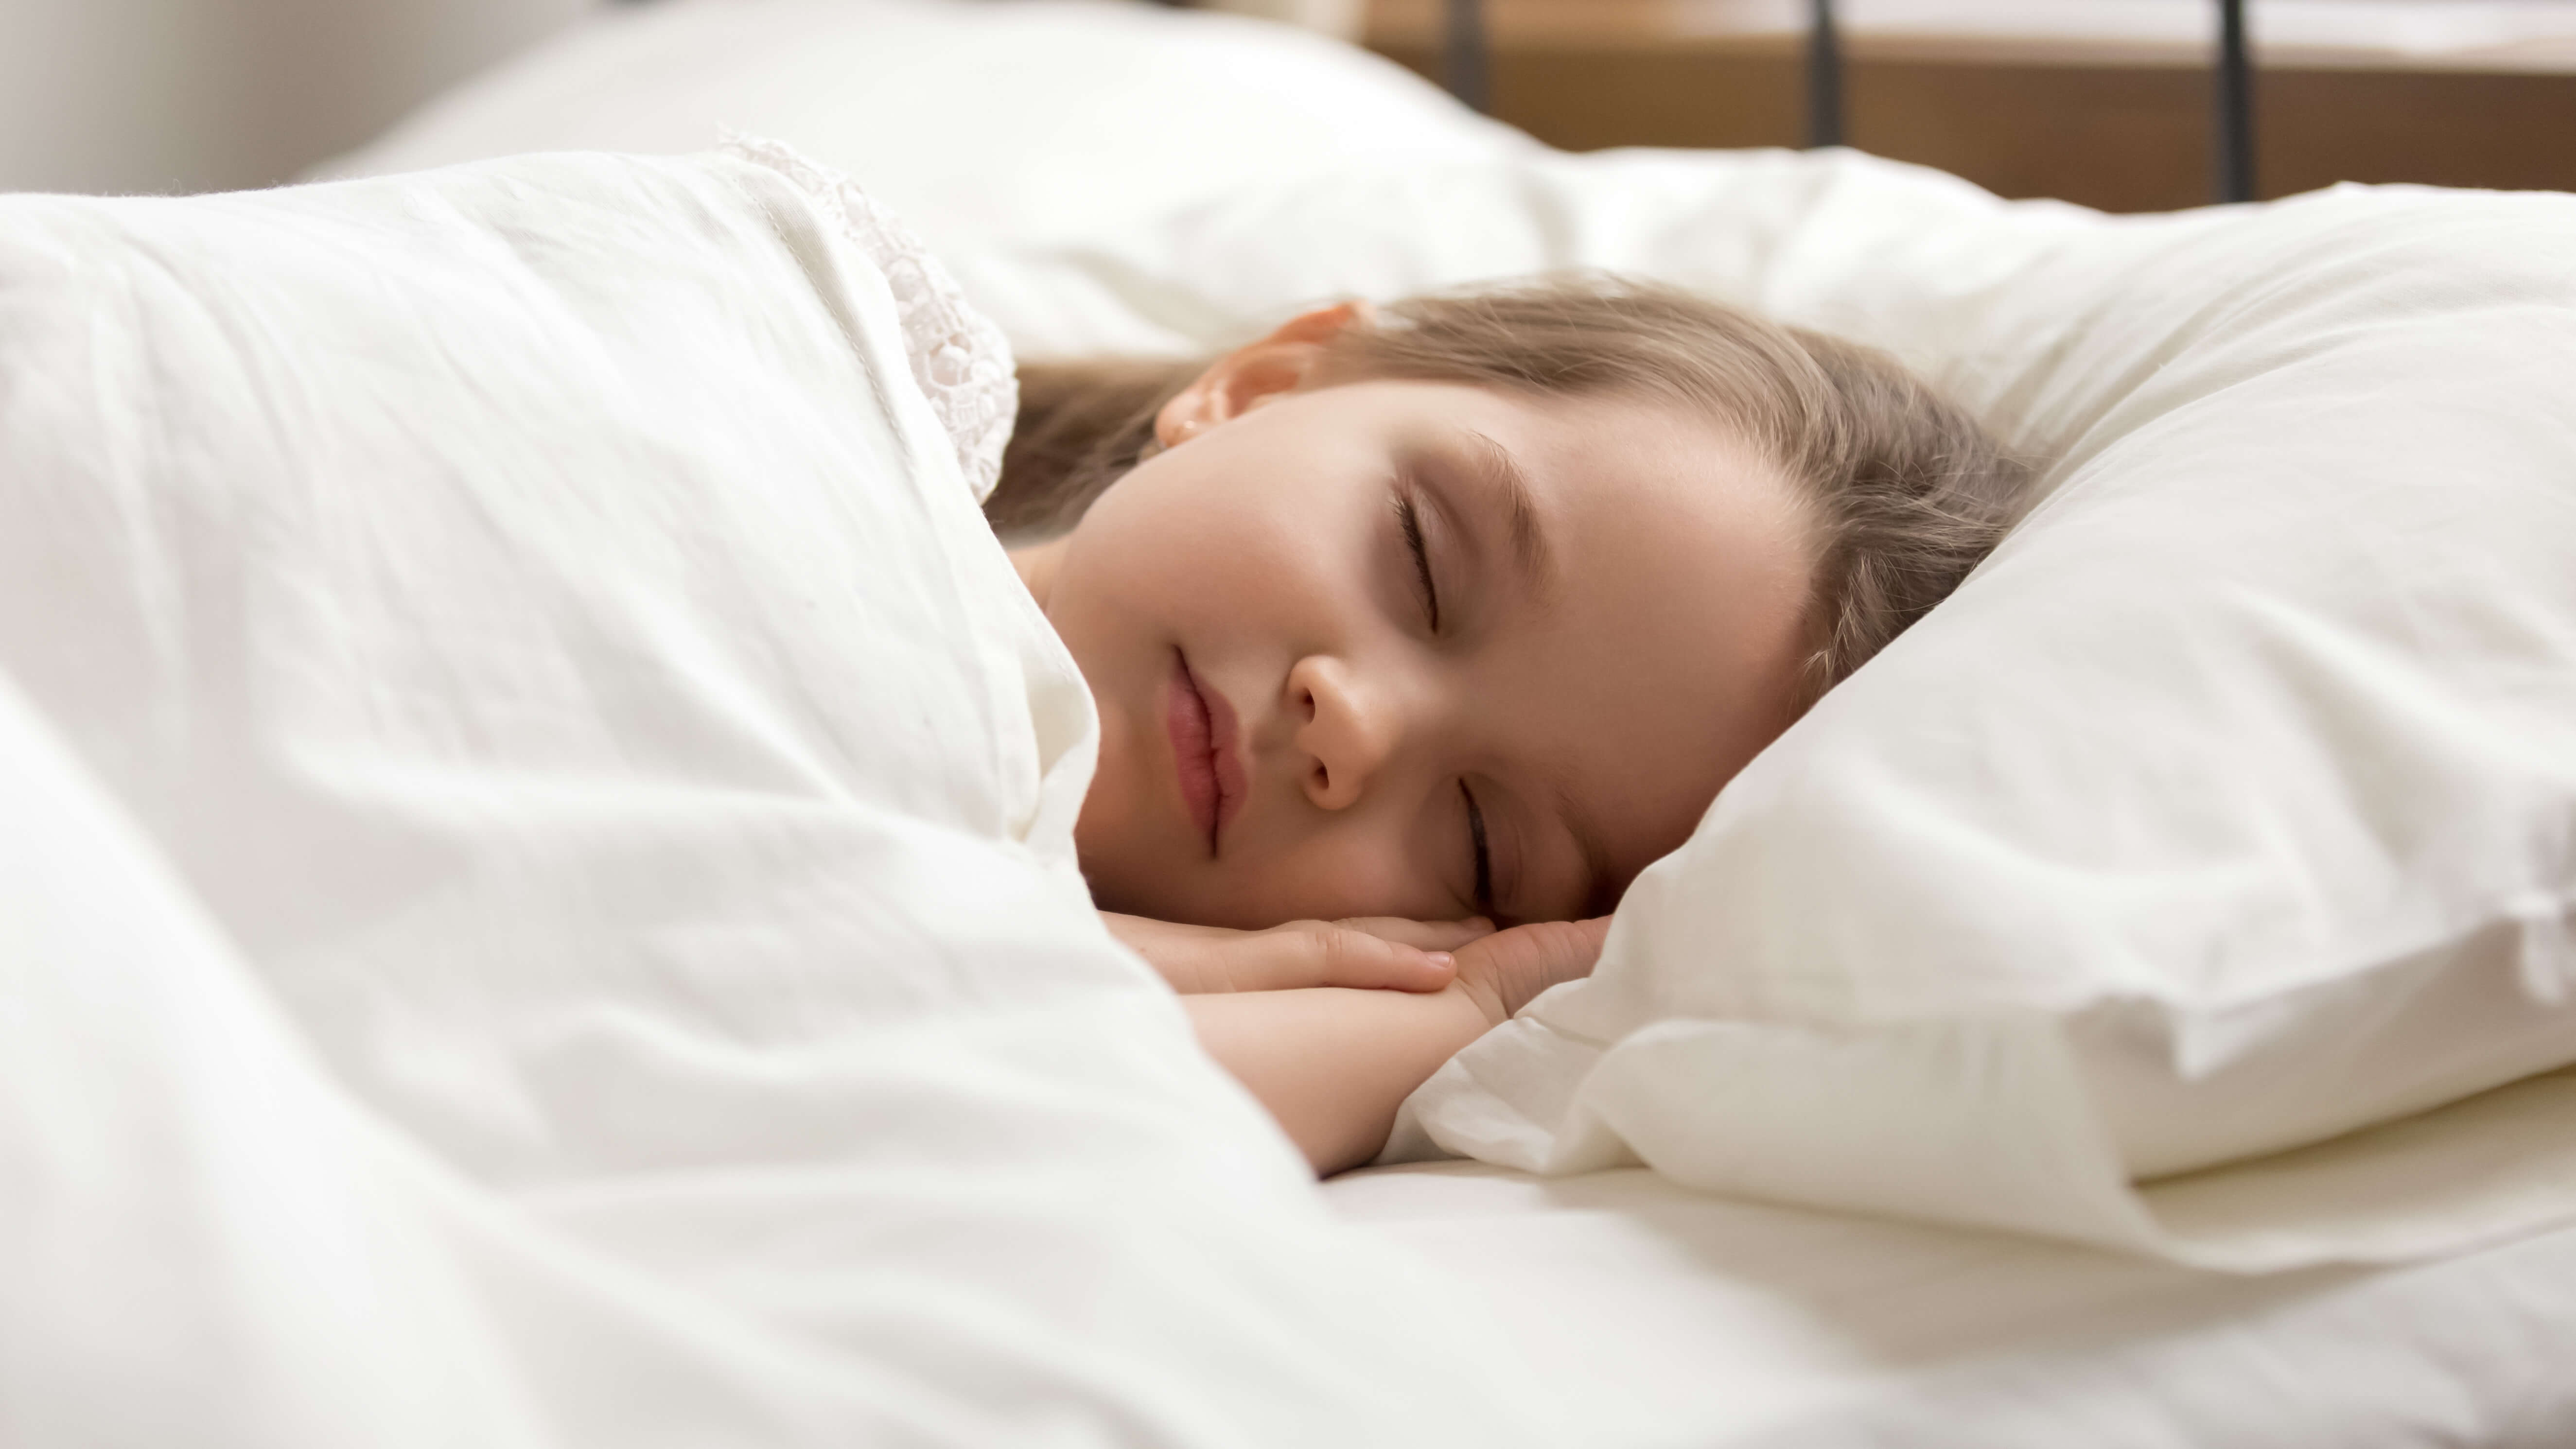 A little girl asleep on a single mattress